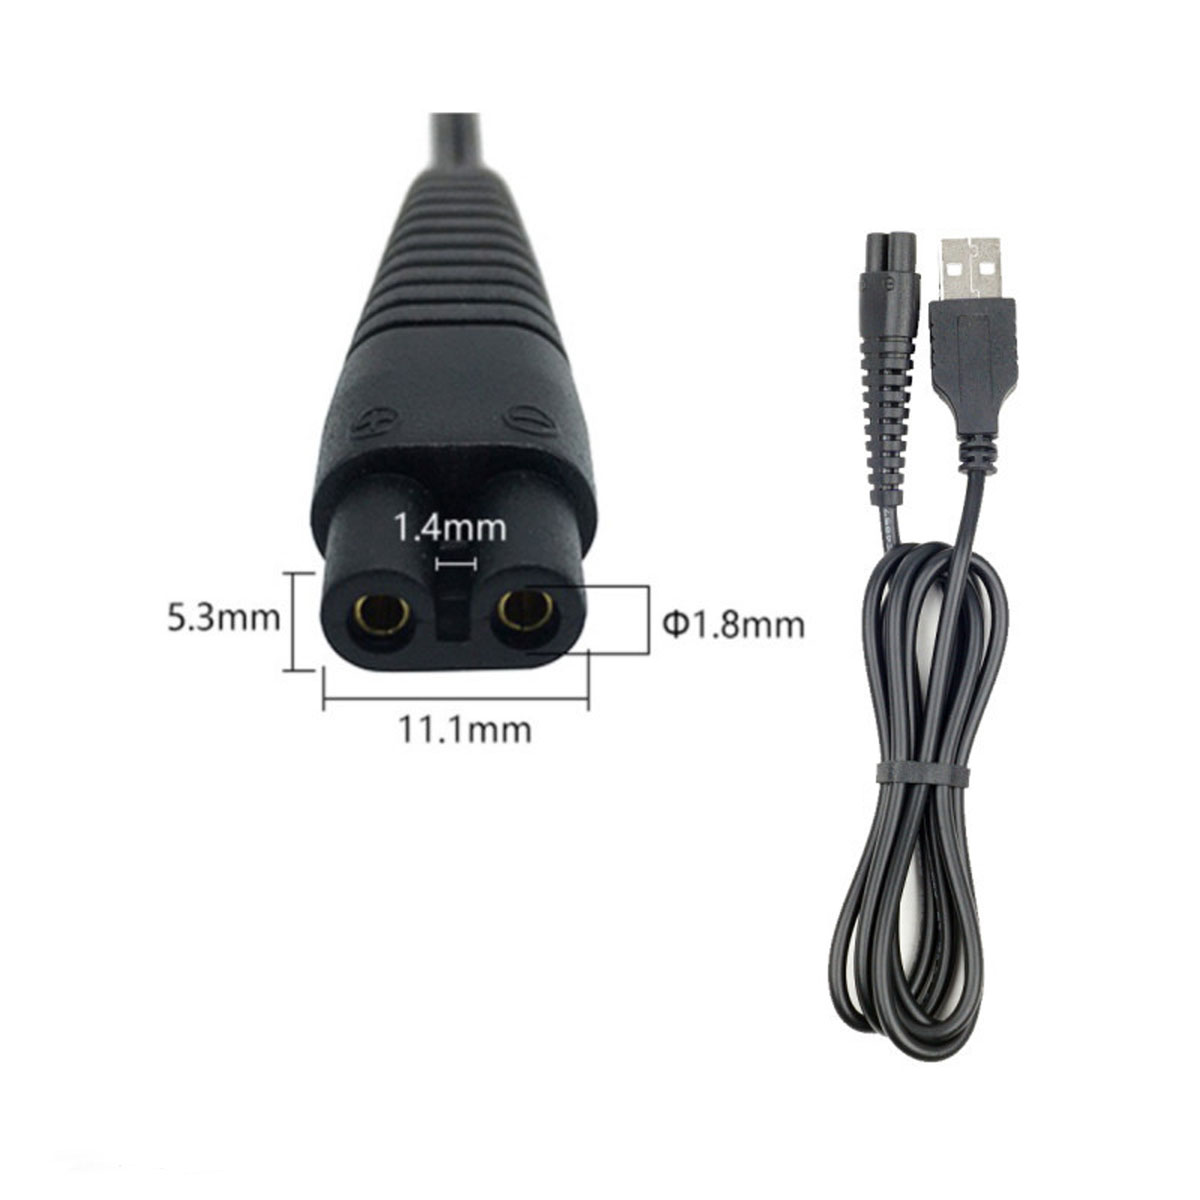 Кабель USB DL41 для зарядки электробритв, длина 1 метр, цвет черный (восьмерка)